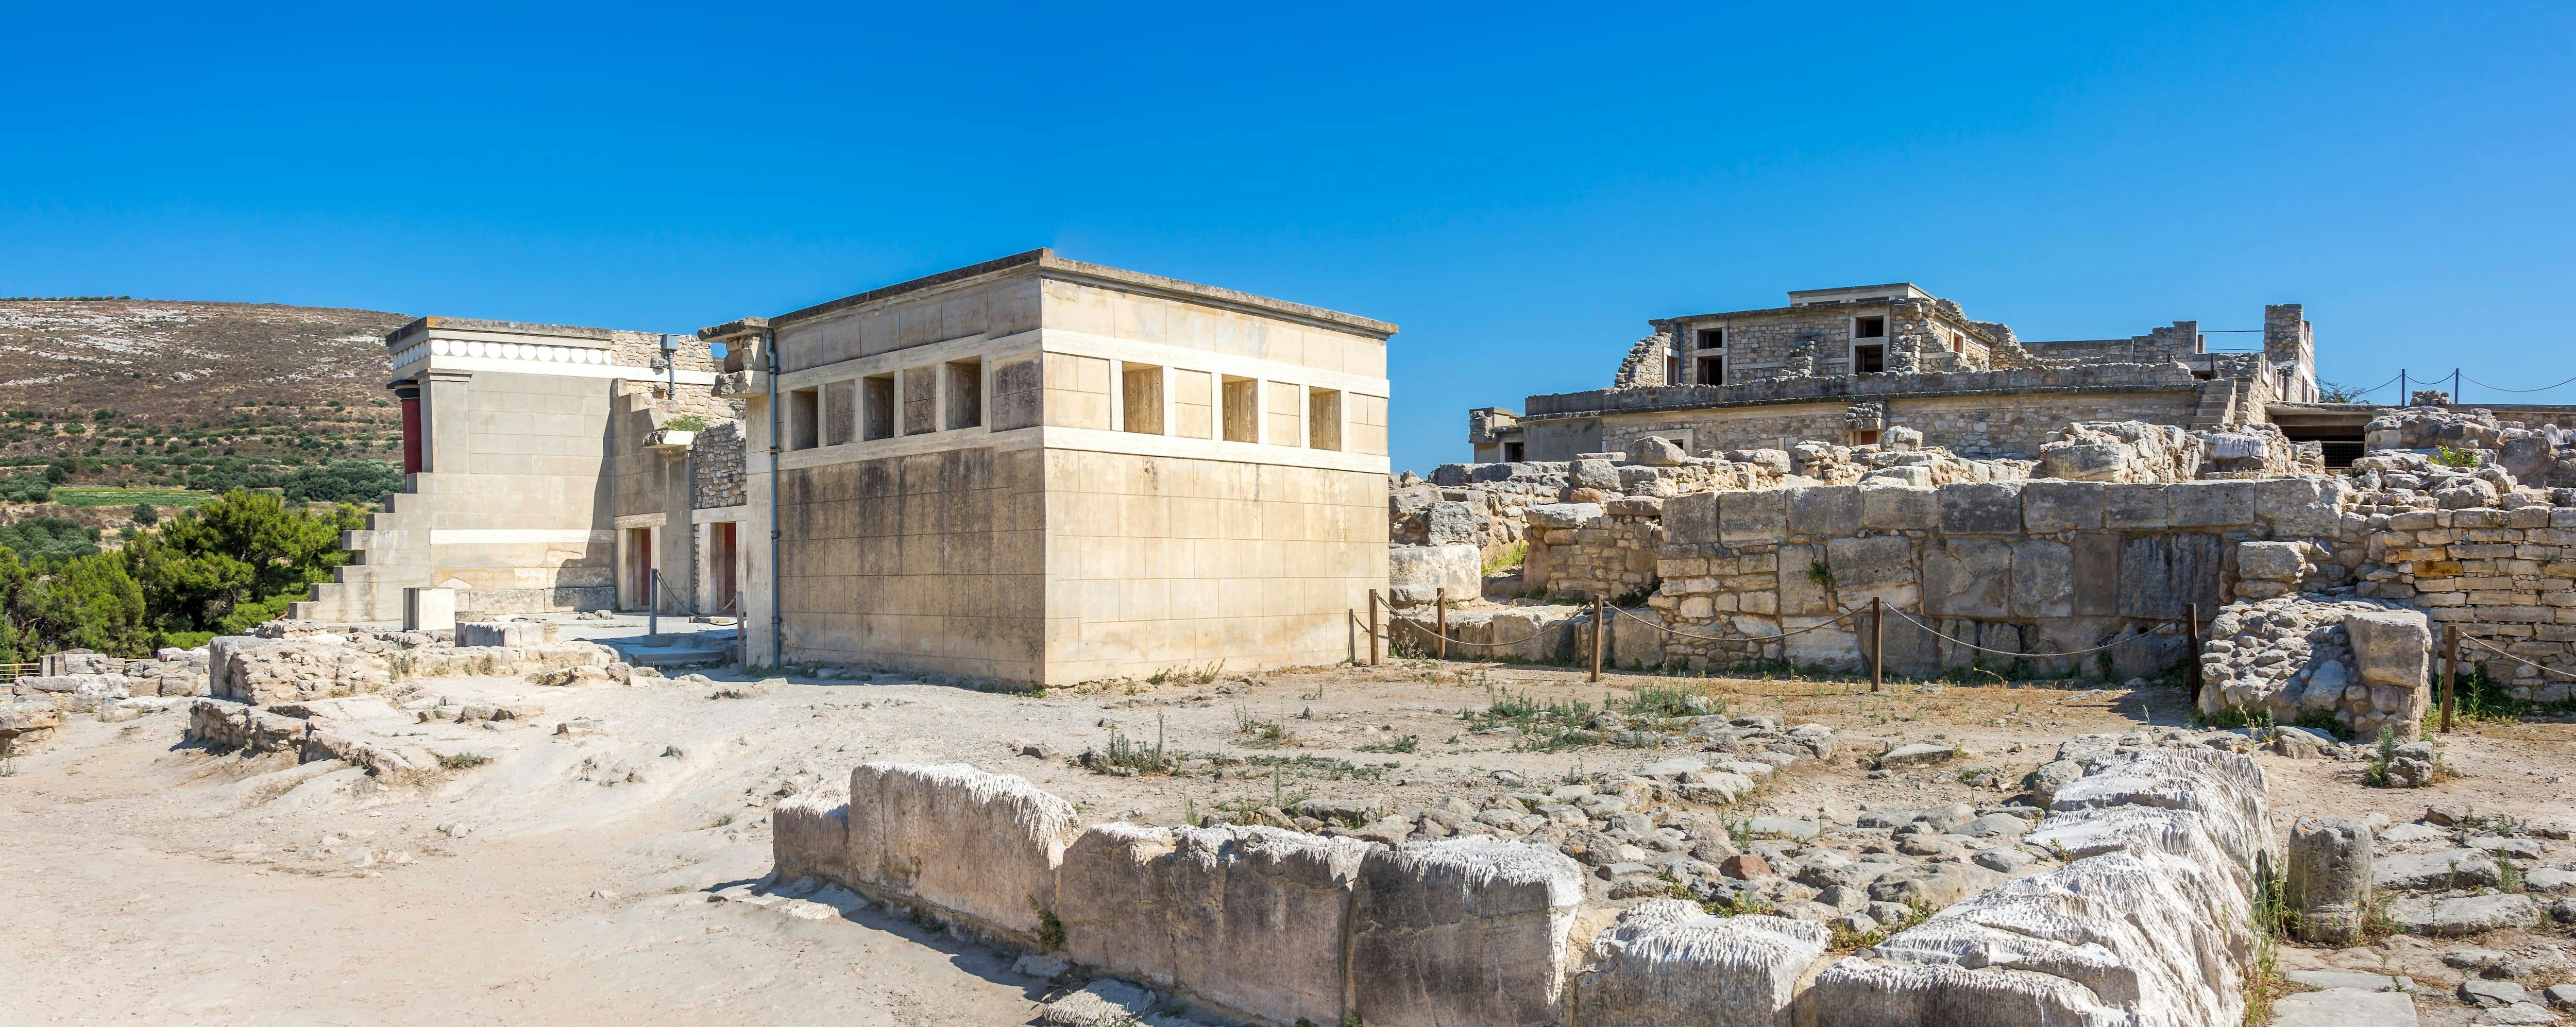 Palast von Knossos Tour